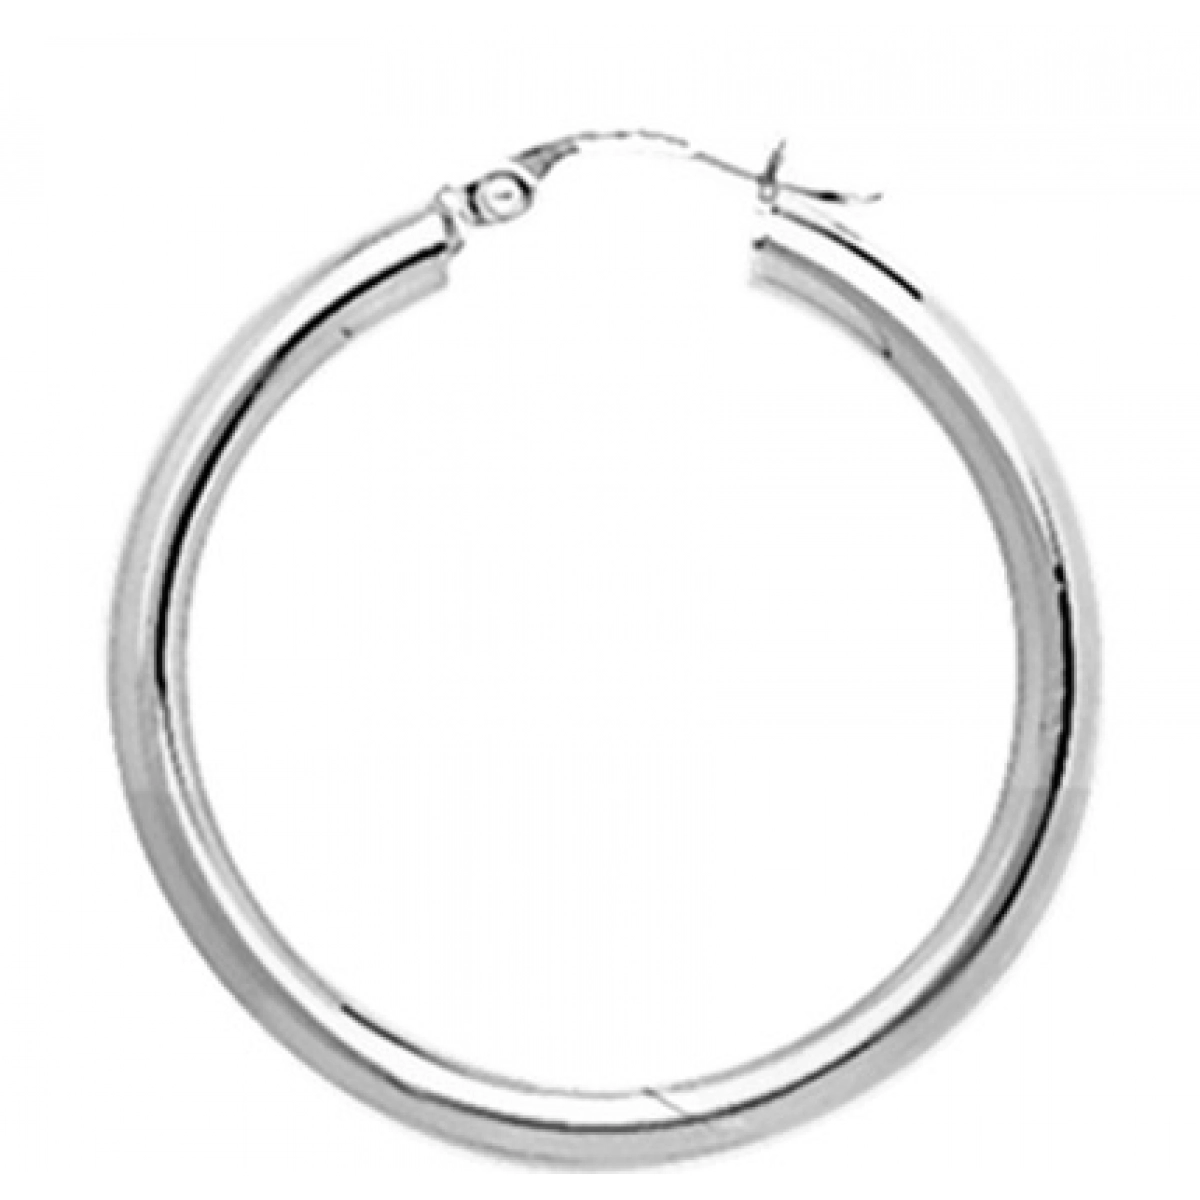 Hoops earrings pair 925 Silver Lua Blanca  235188.0